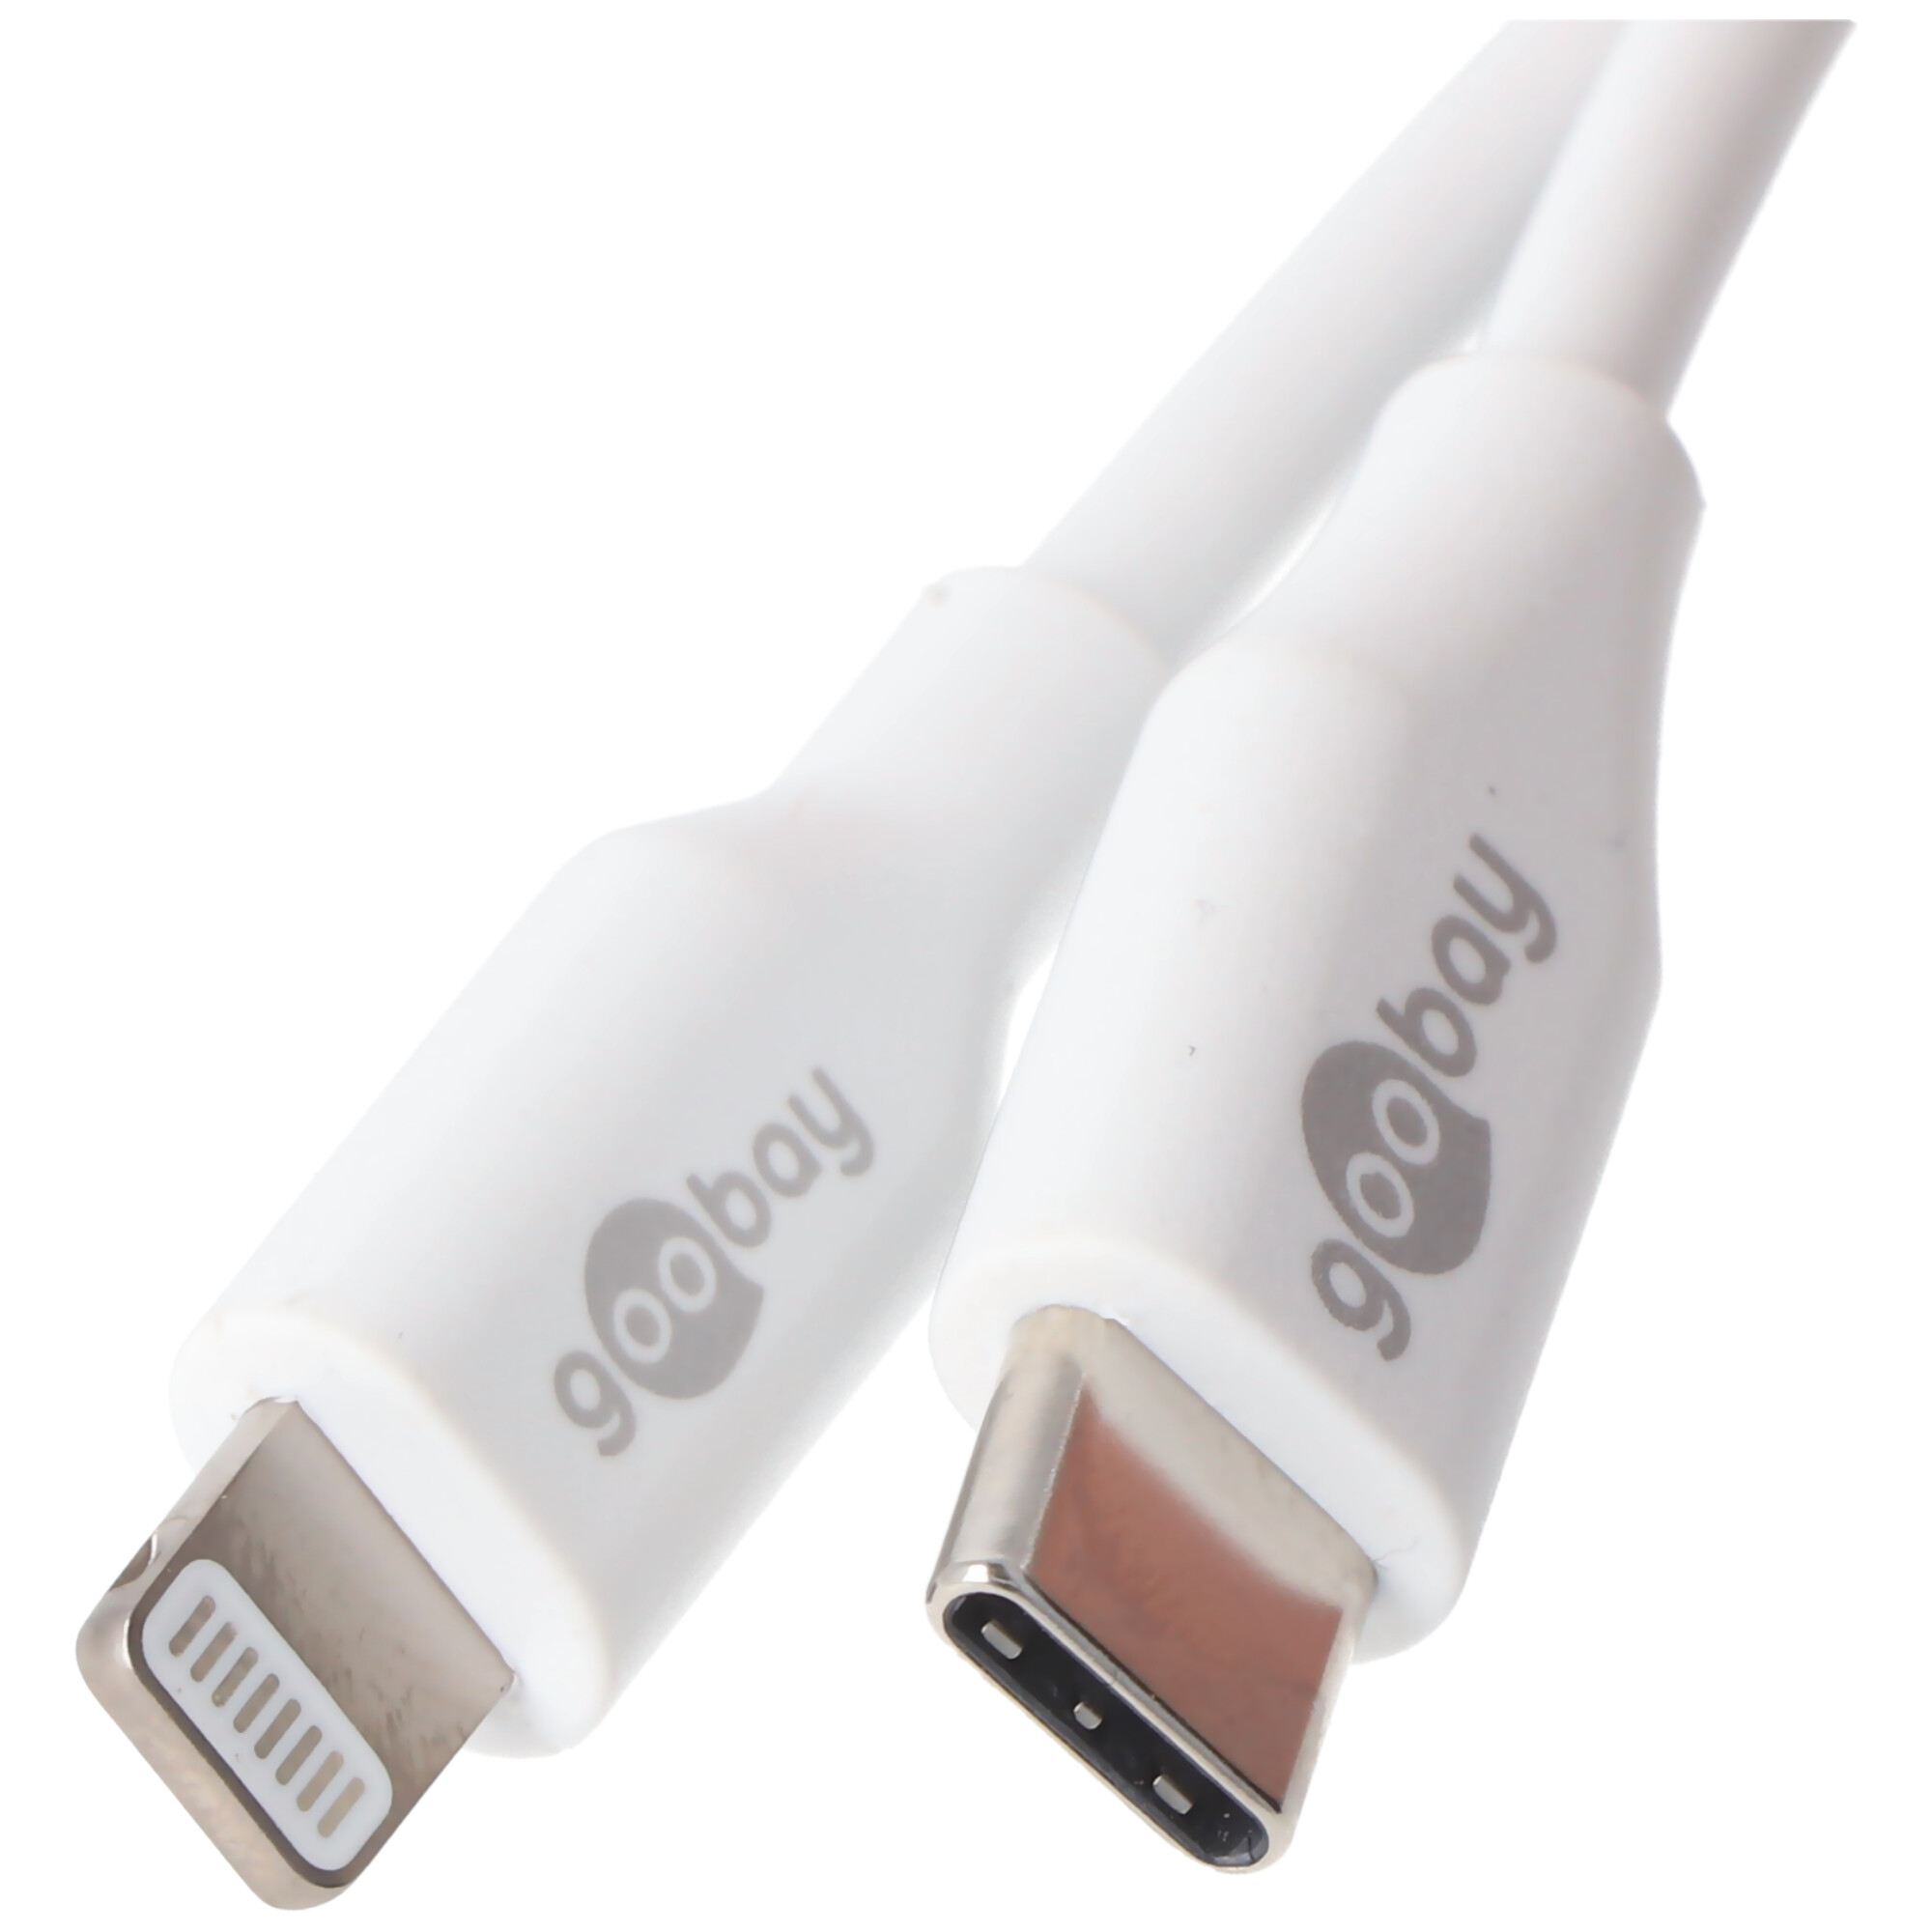 Synchronisationskabel, iPad, das Universal, iPhone, und für Apple Lightning Netzwerkkabel GOOBAY Schwarz Lade- USB-C weiß MFi-Kabel